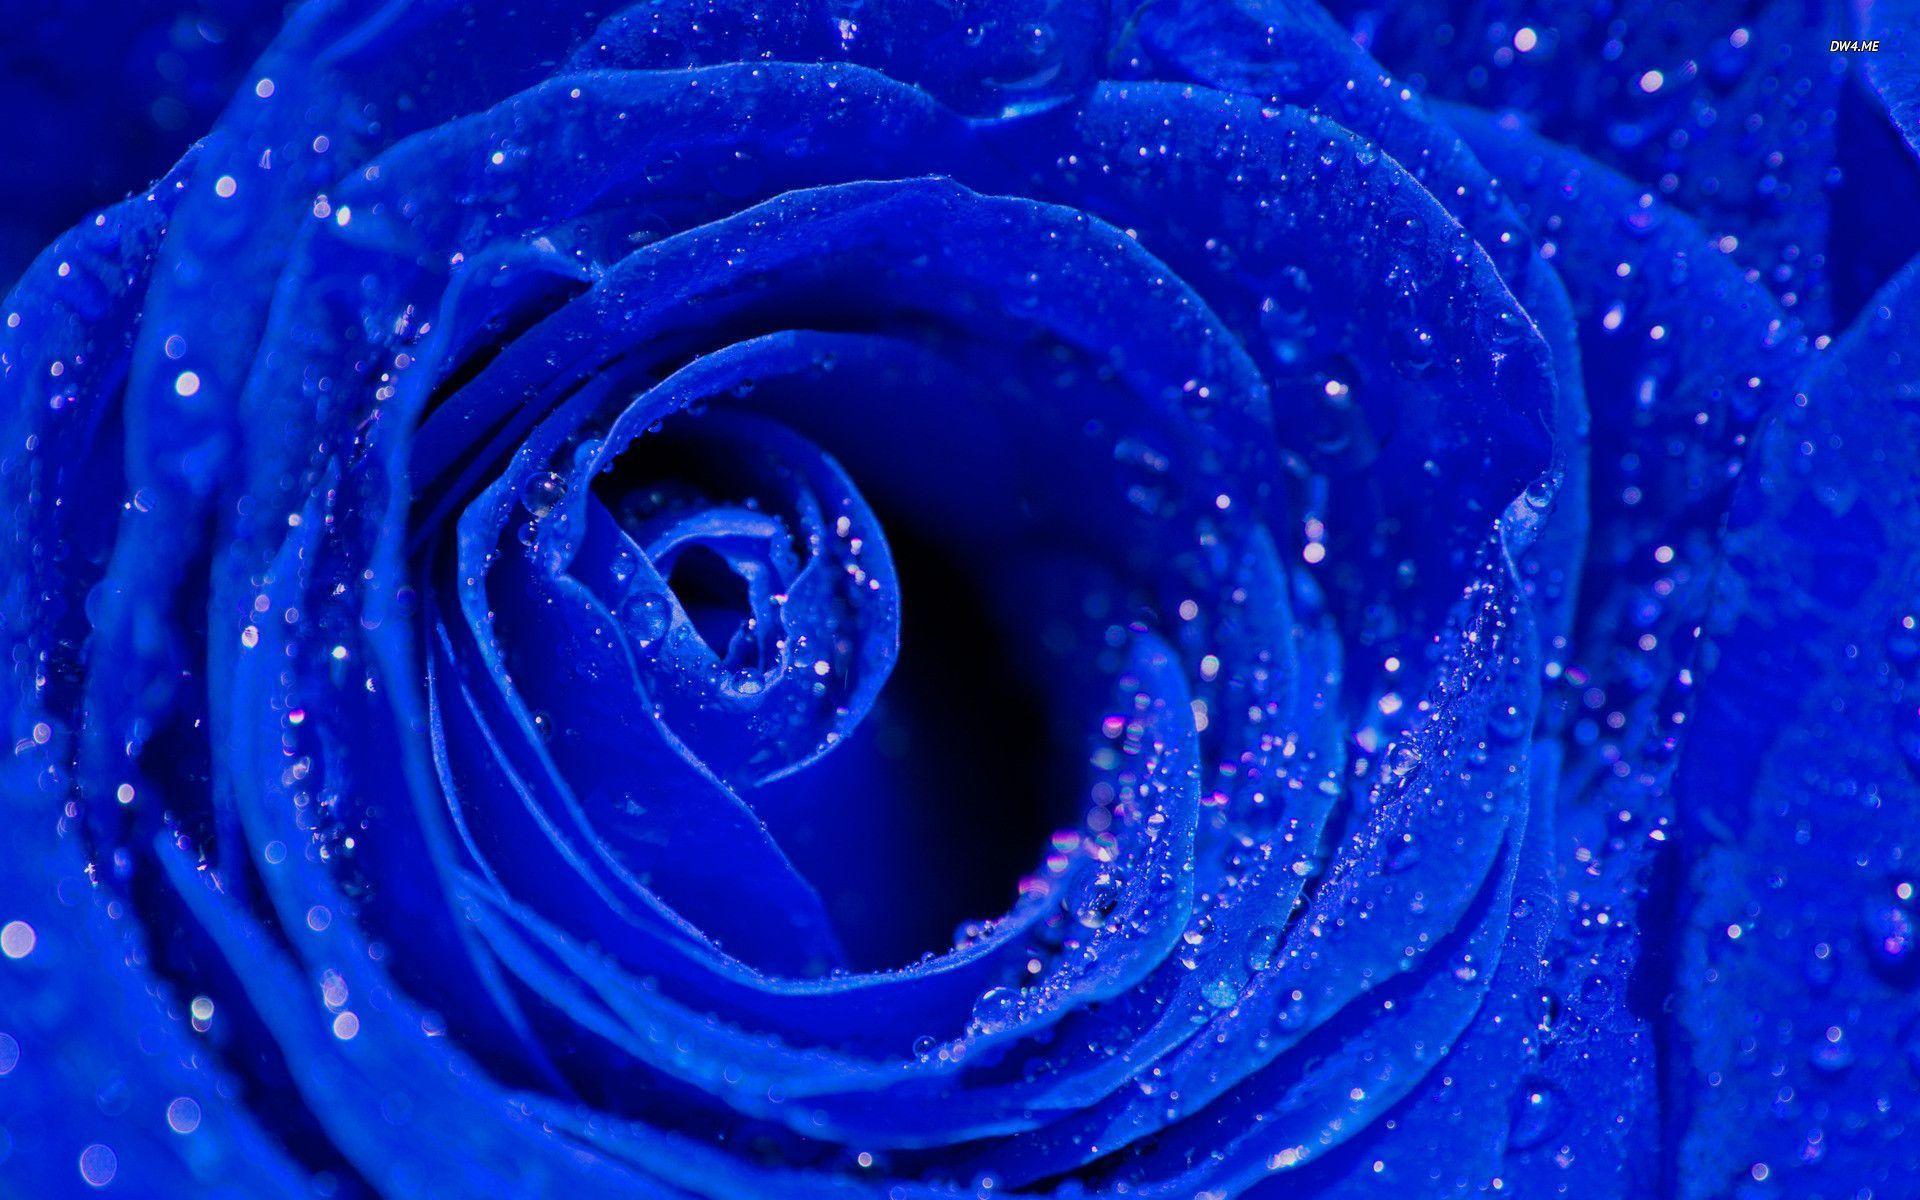 Wallpaper For > Wallpaper Of Blue Roses